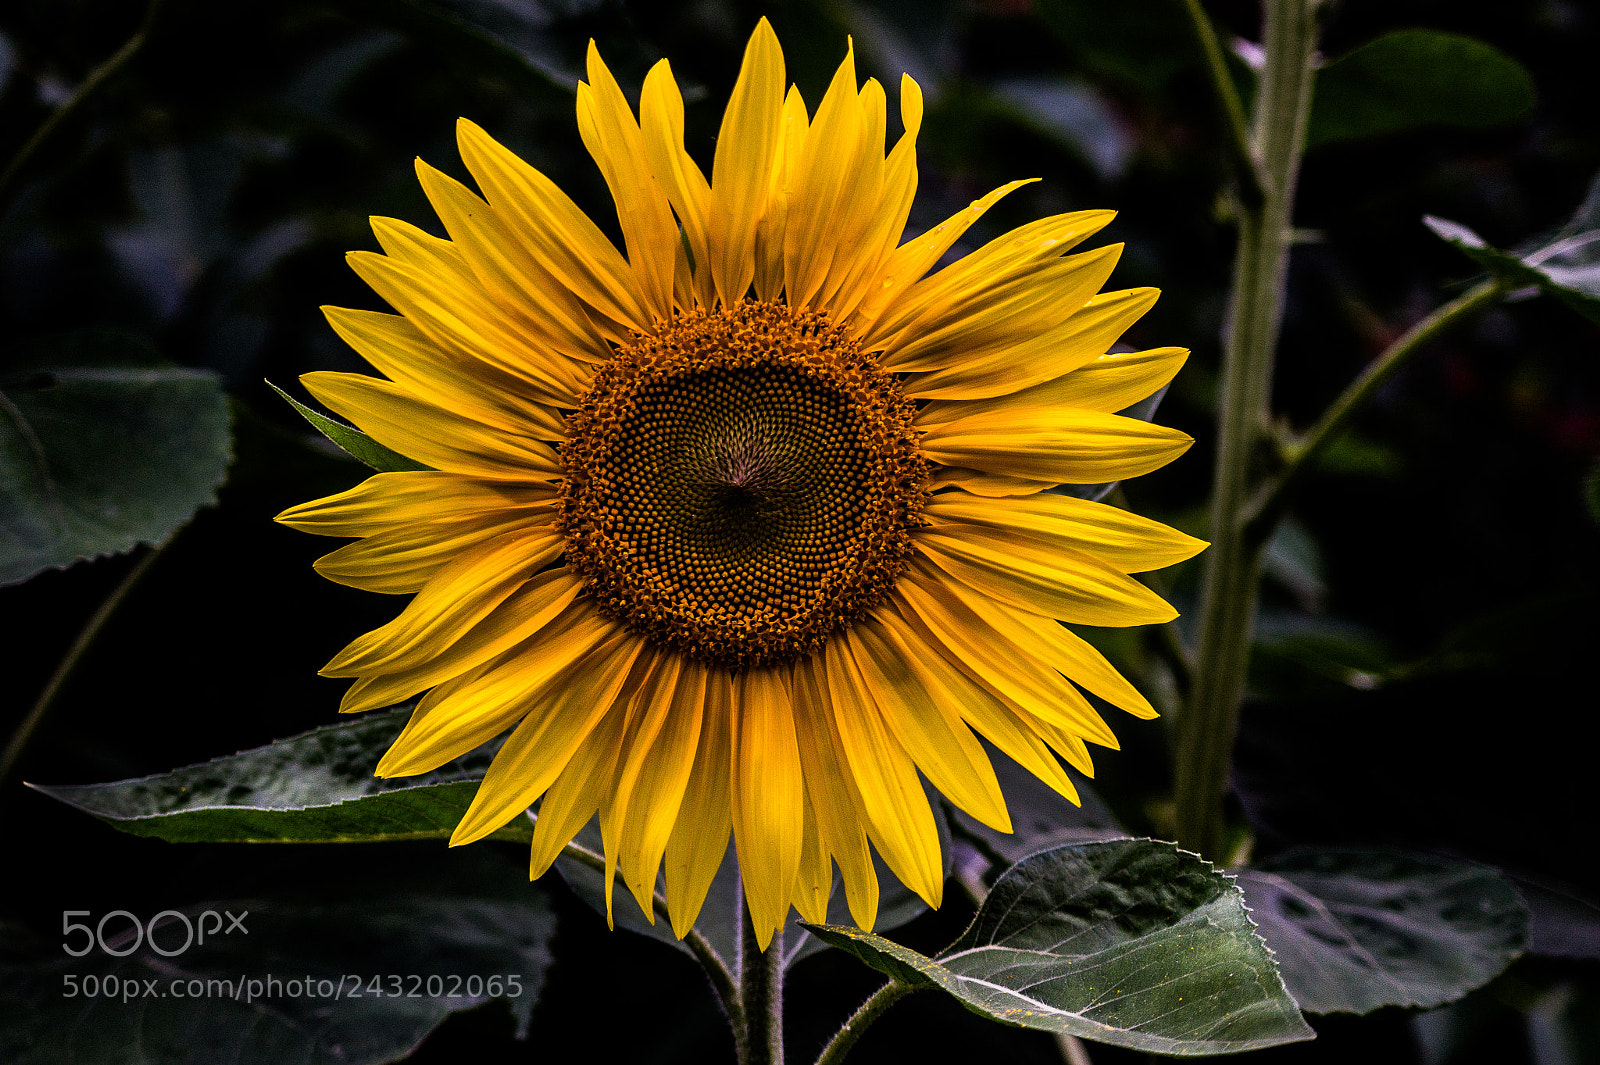 Sony SLT-A58 sample photo. Sunflower photography